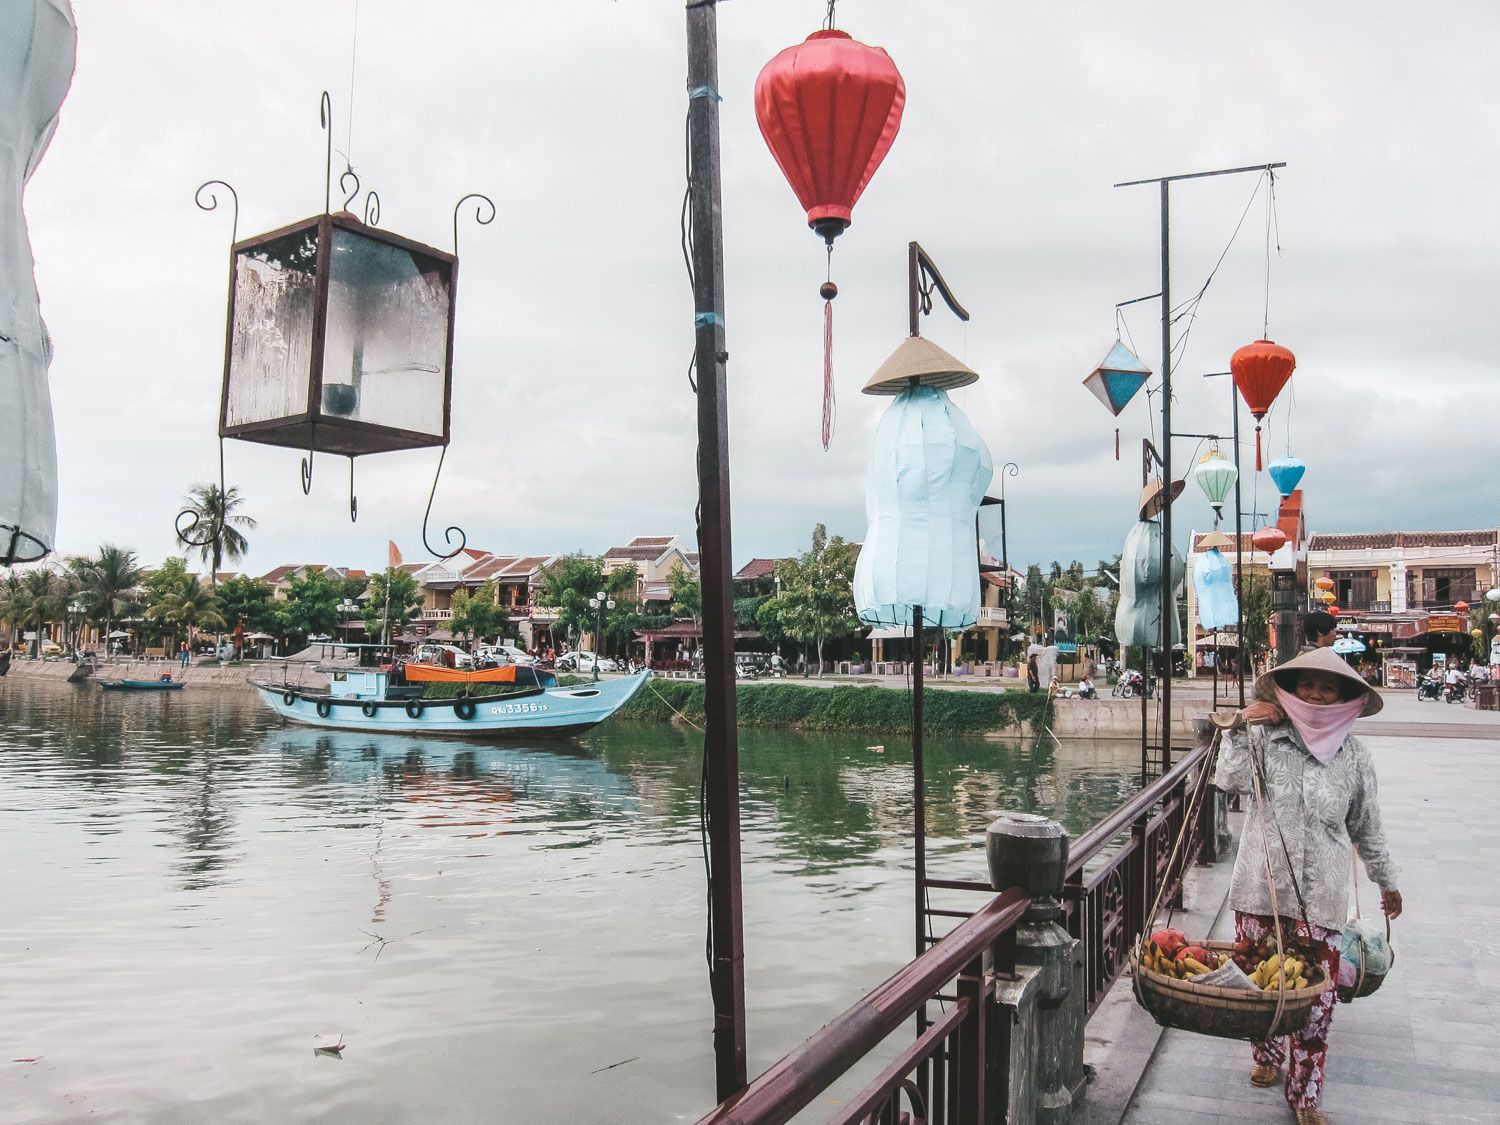 Boats in Vietnam